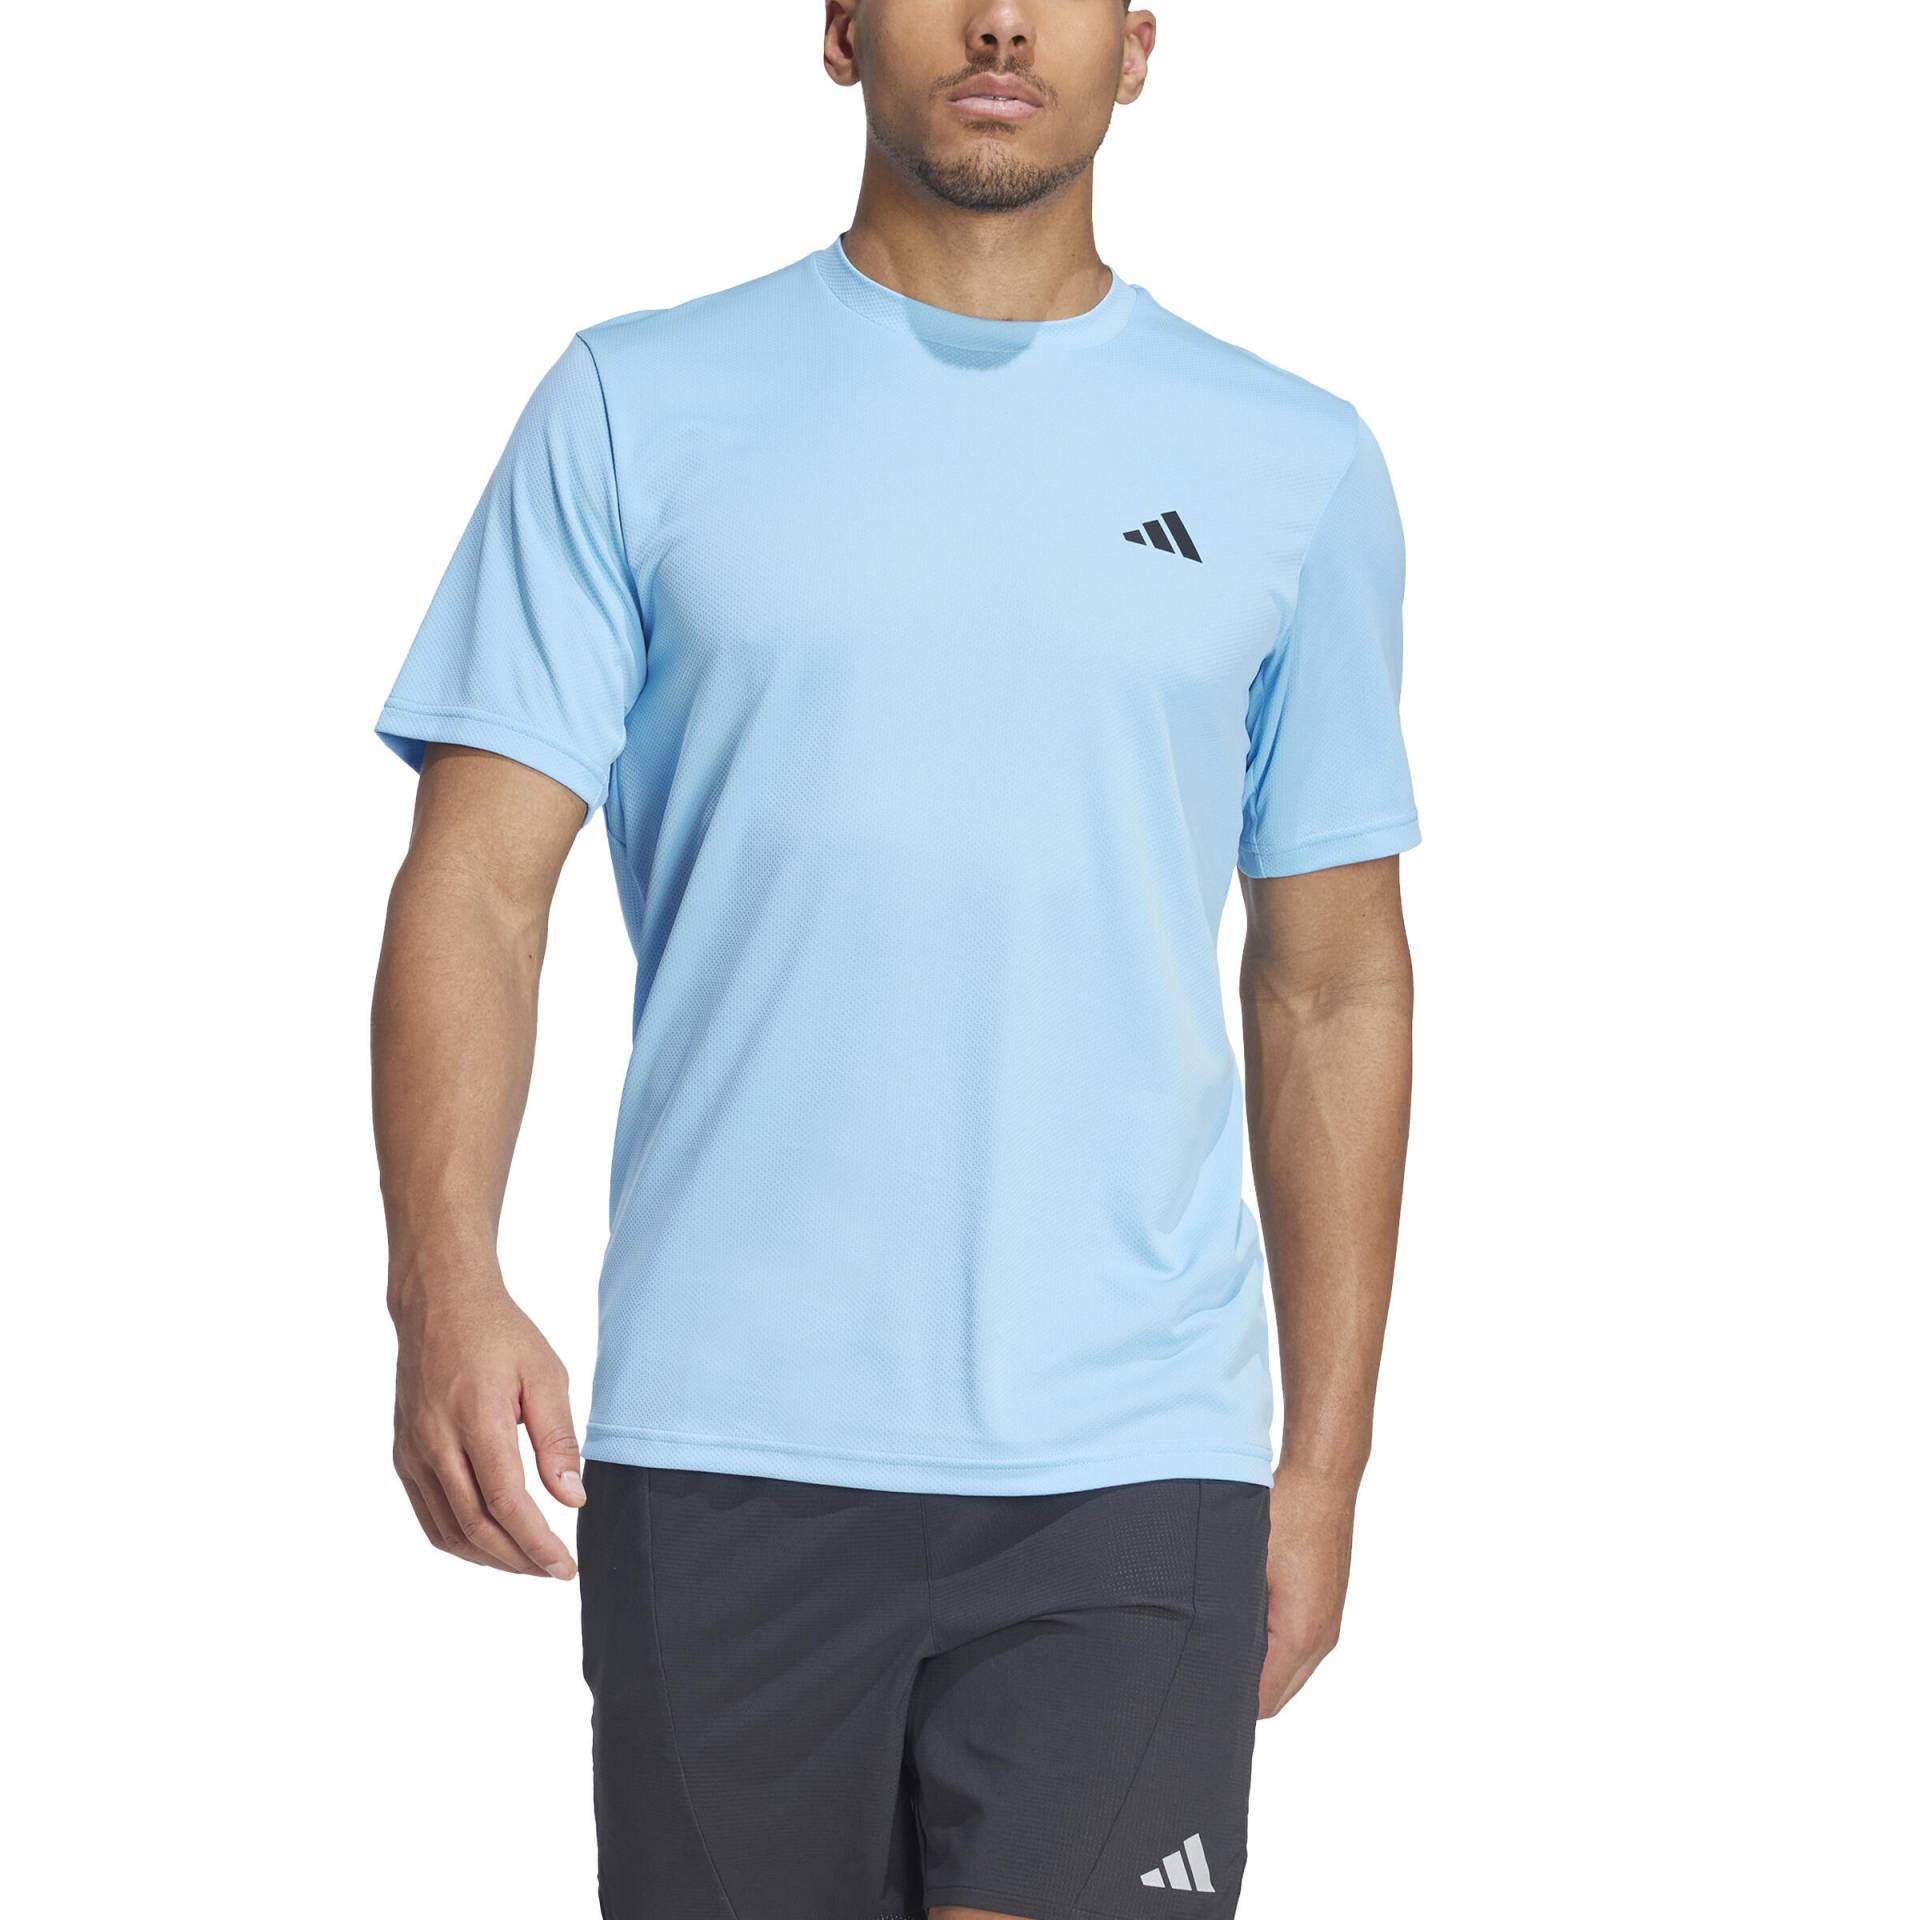 ADIDAS T-Shirt Herren - blau von Adidas